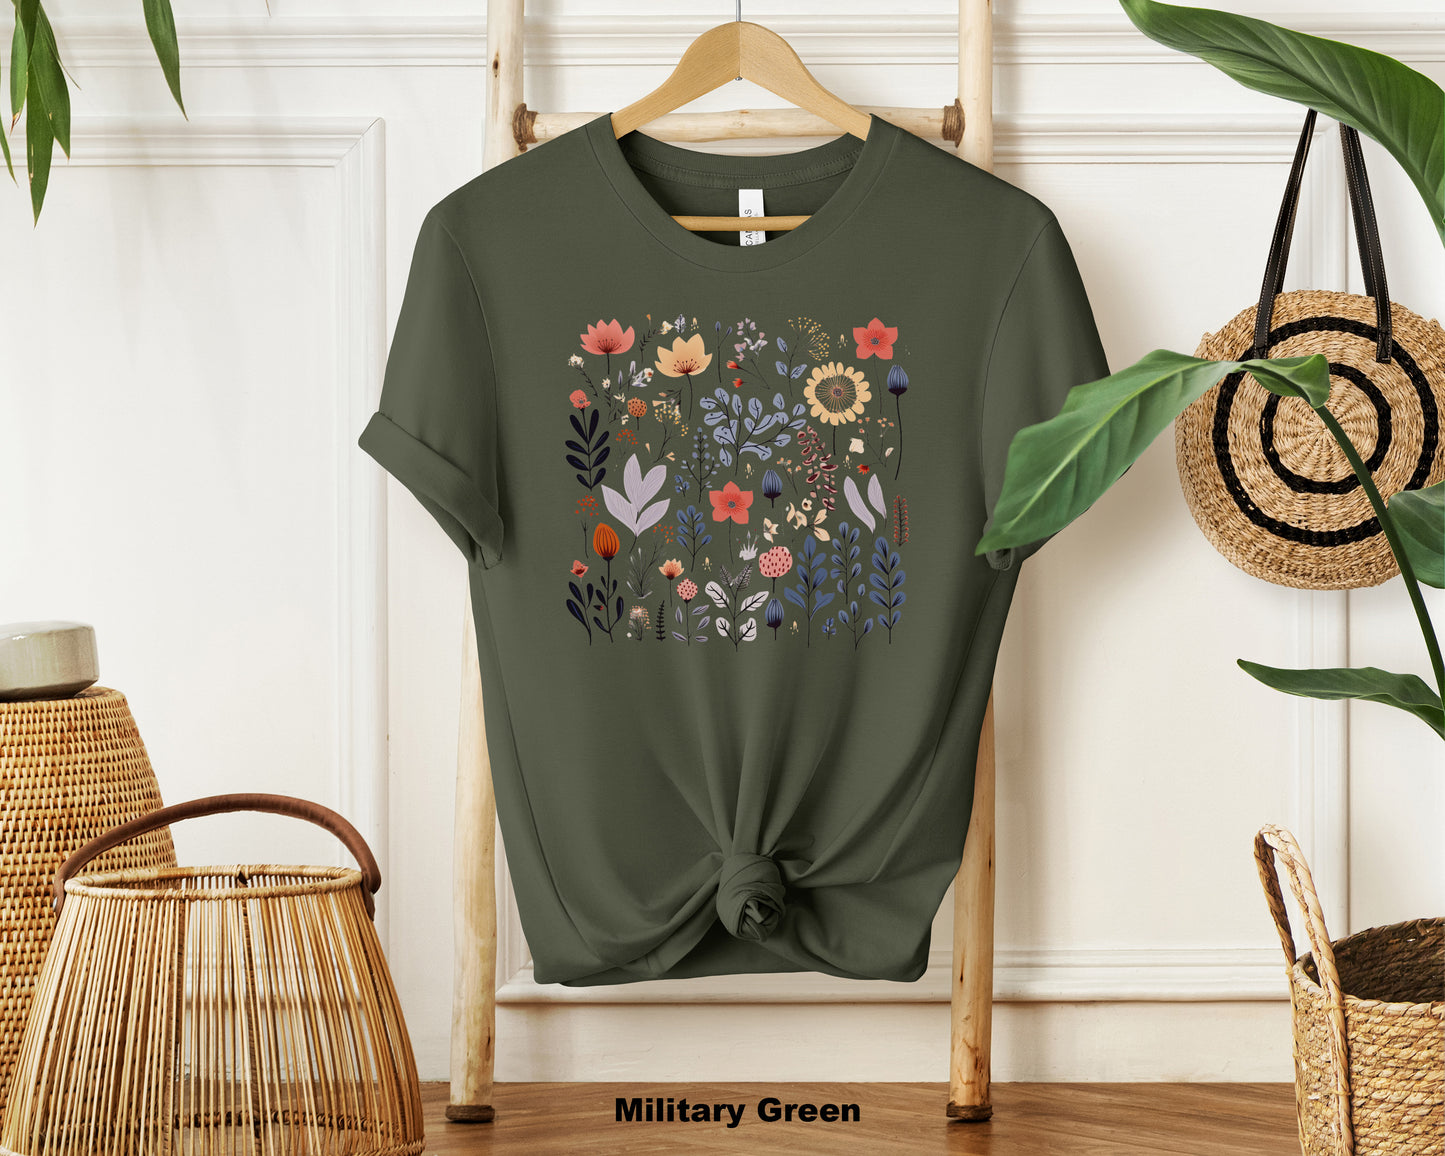 Serenity Blossoms Feminine Wildflower Tee - Nature-Inspired Graphic